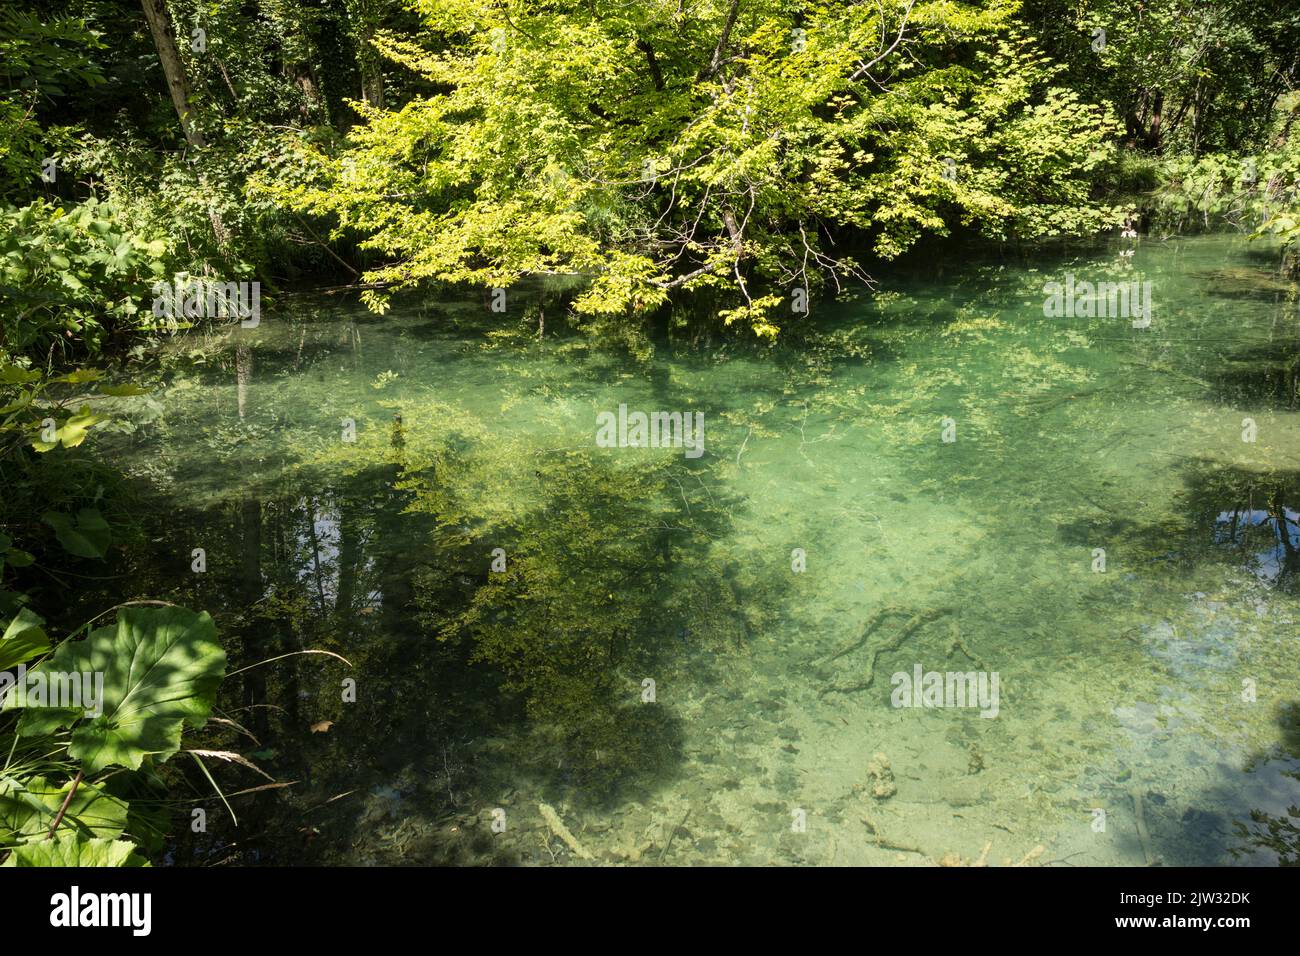 Piscina poco profunda con agua cristalina con reflejo de los árboles sobre ella en el Parque Nacional de los Lagos de Plitvice, Croacia, Europa. Foto de stock